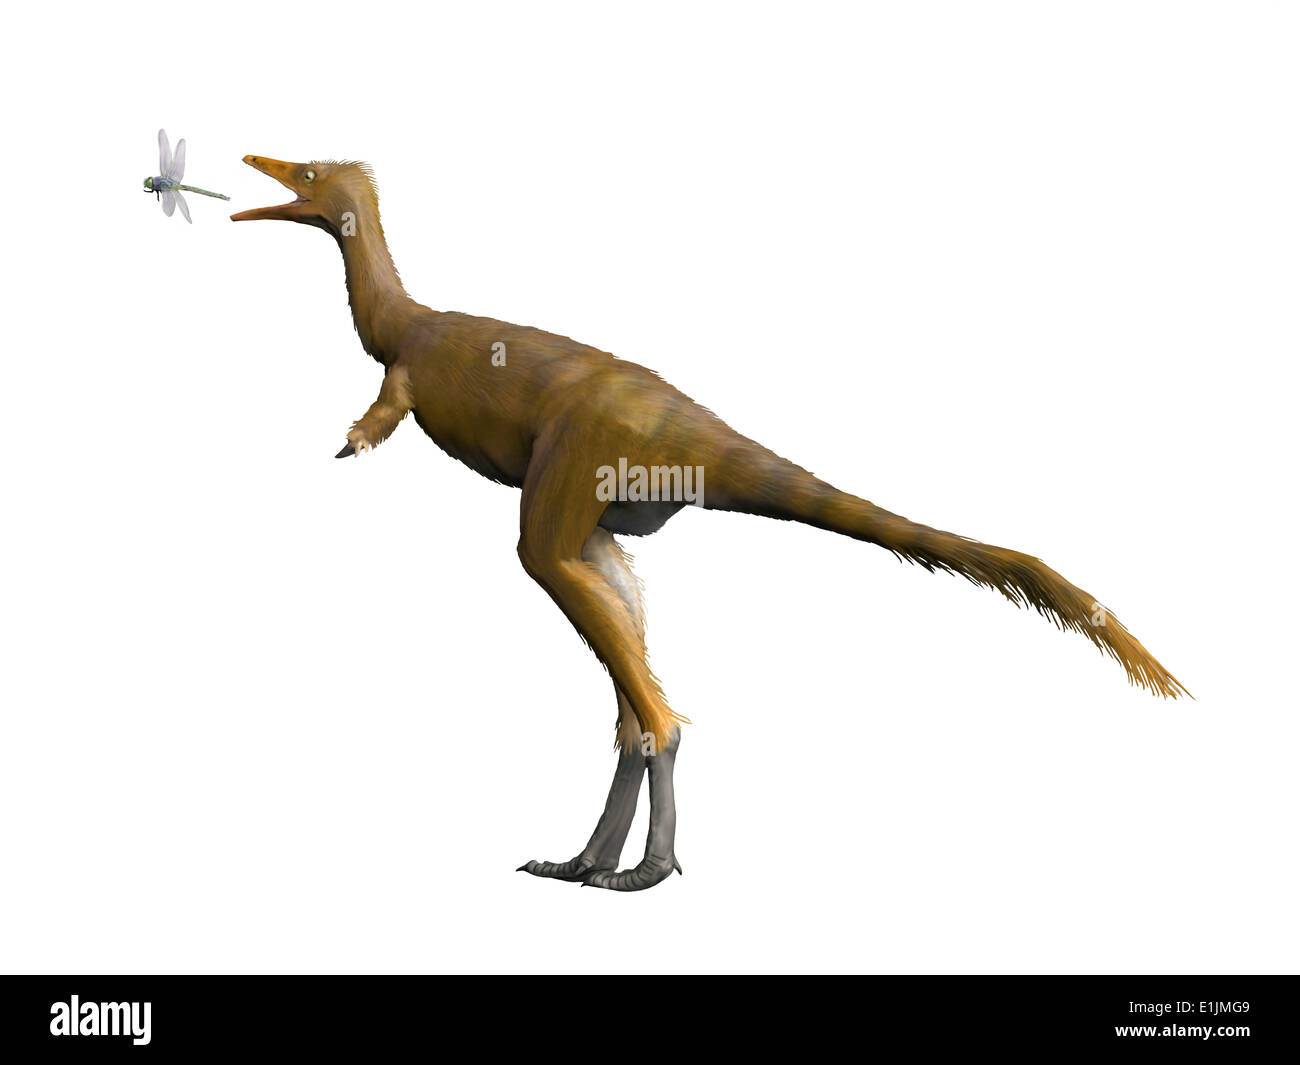 Shuvuuia dinosaur, white background. Stock Photo